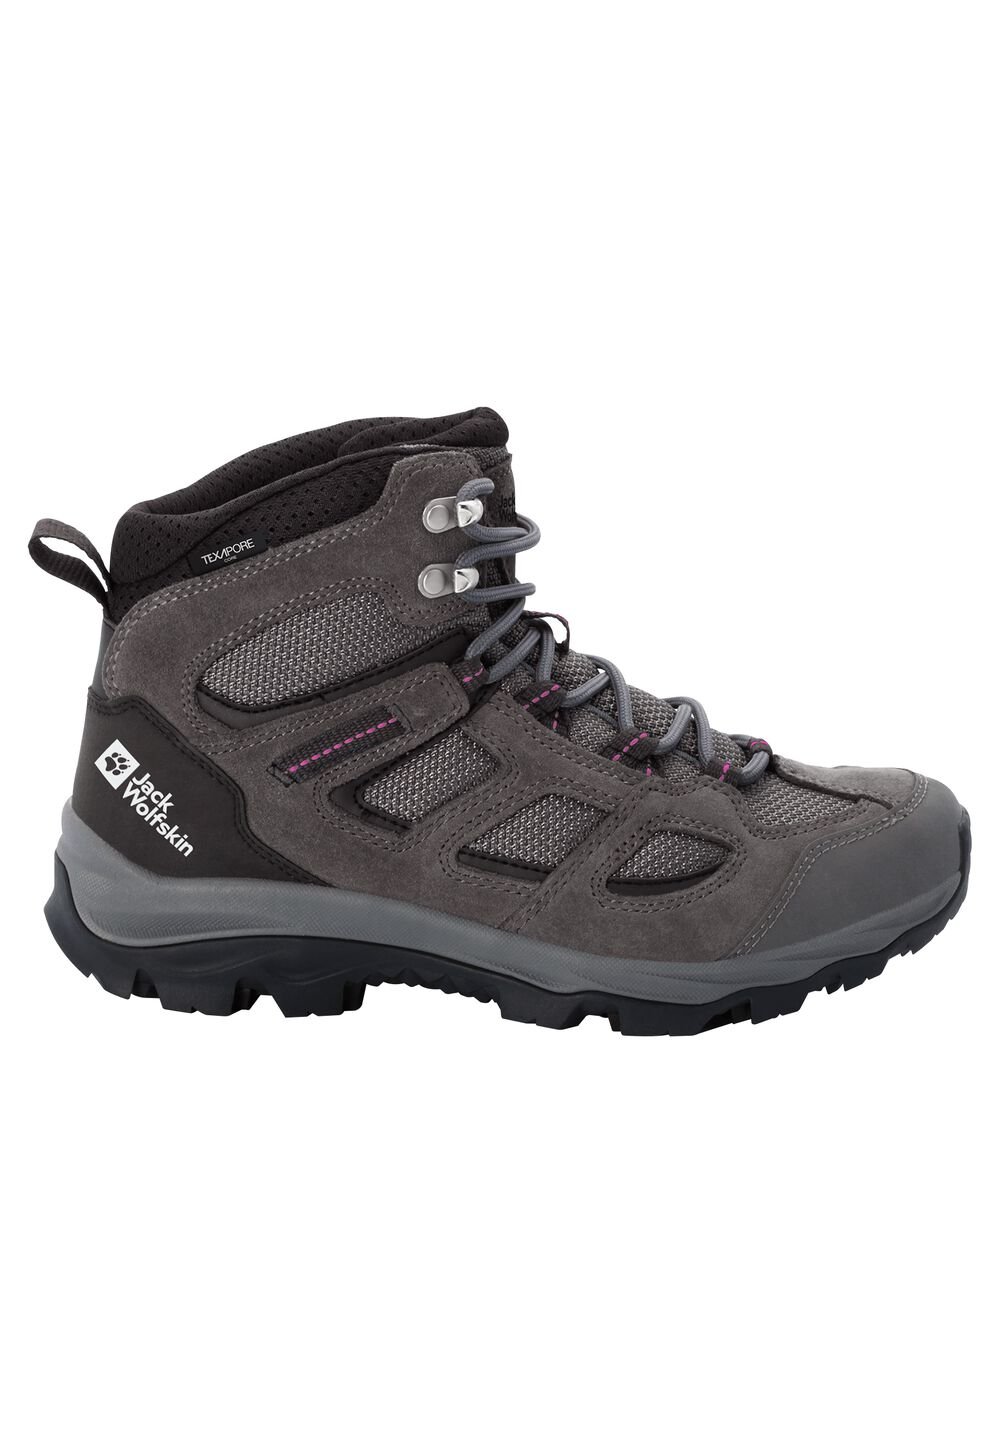 Chaussures de randonnée imperméables femmes Vojo 3 Texapore Mid Women 8,5 gris tarmac grey / pink